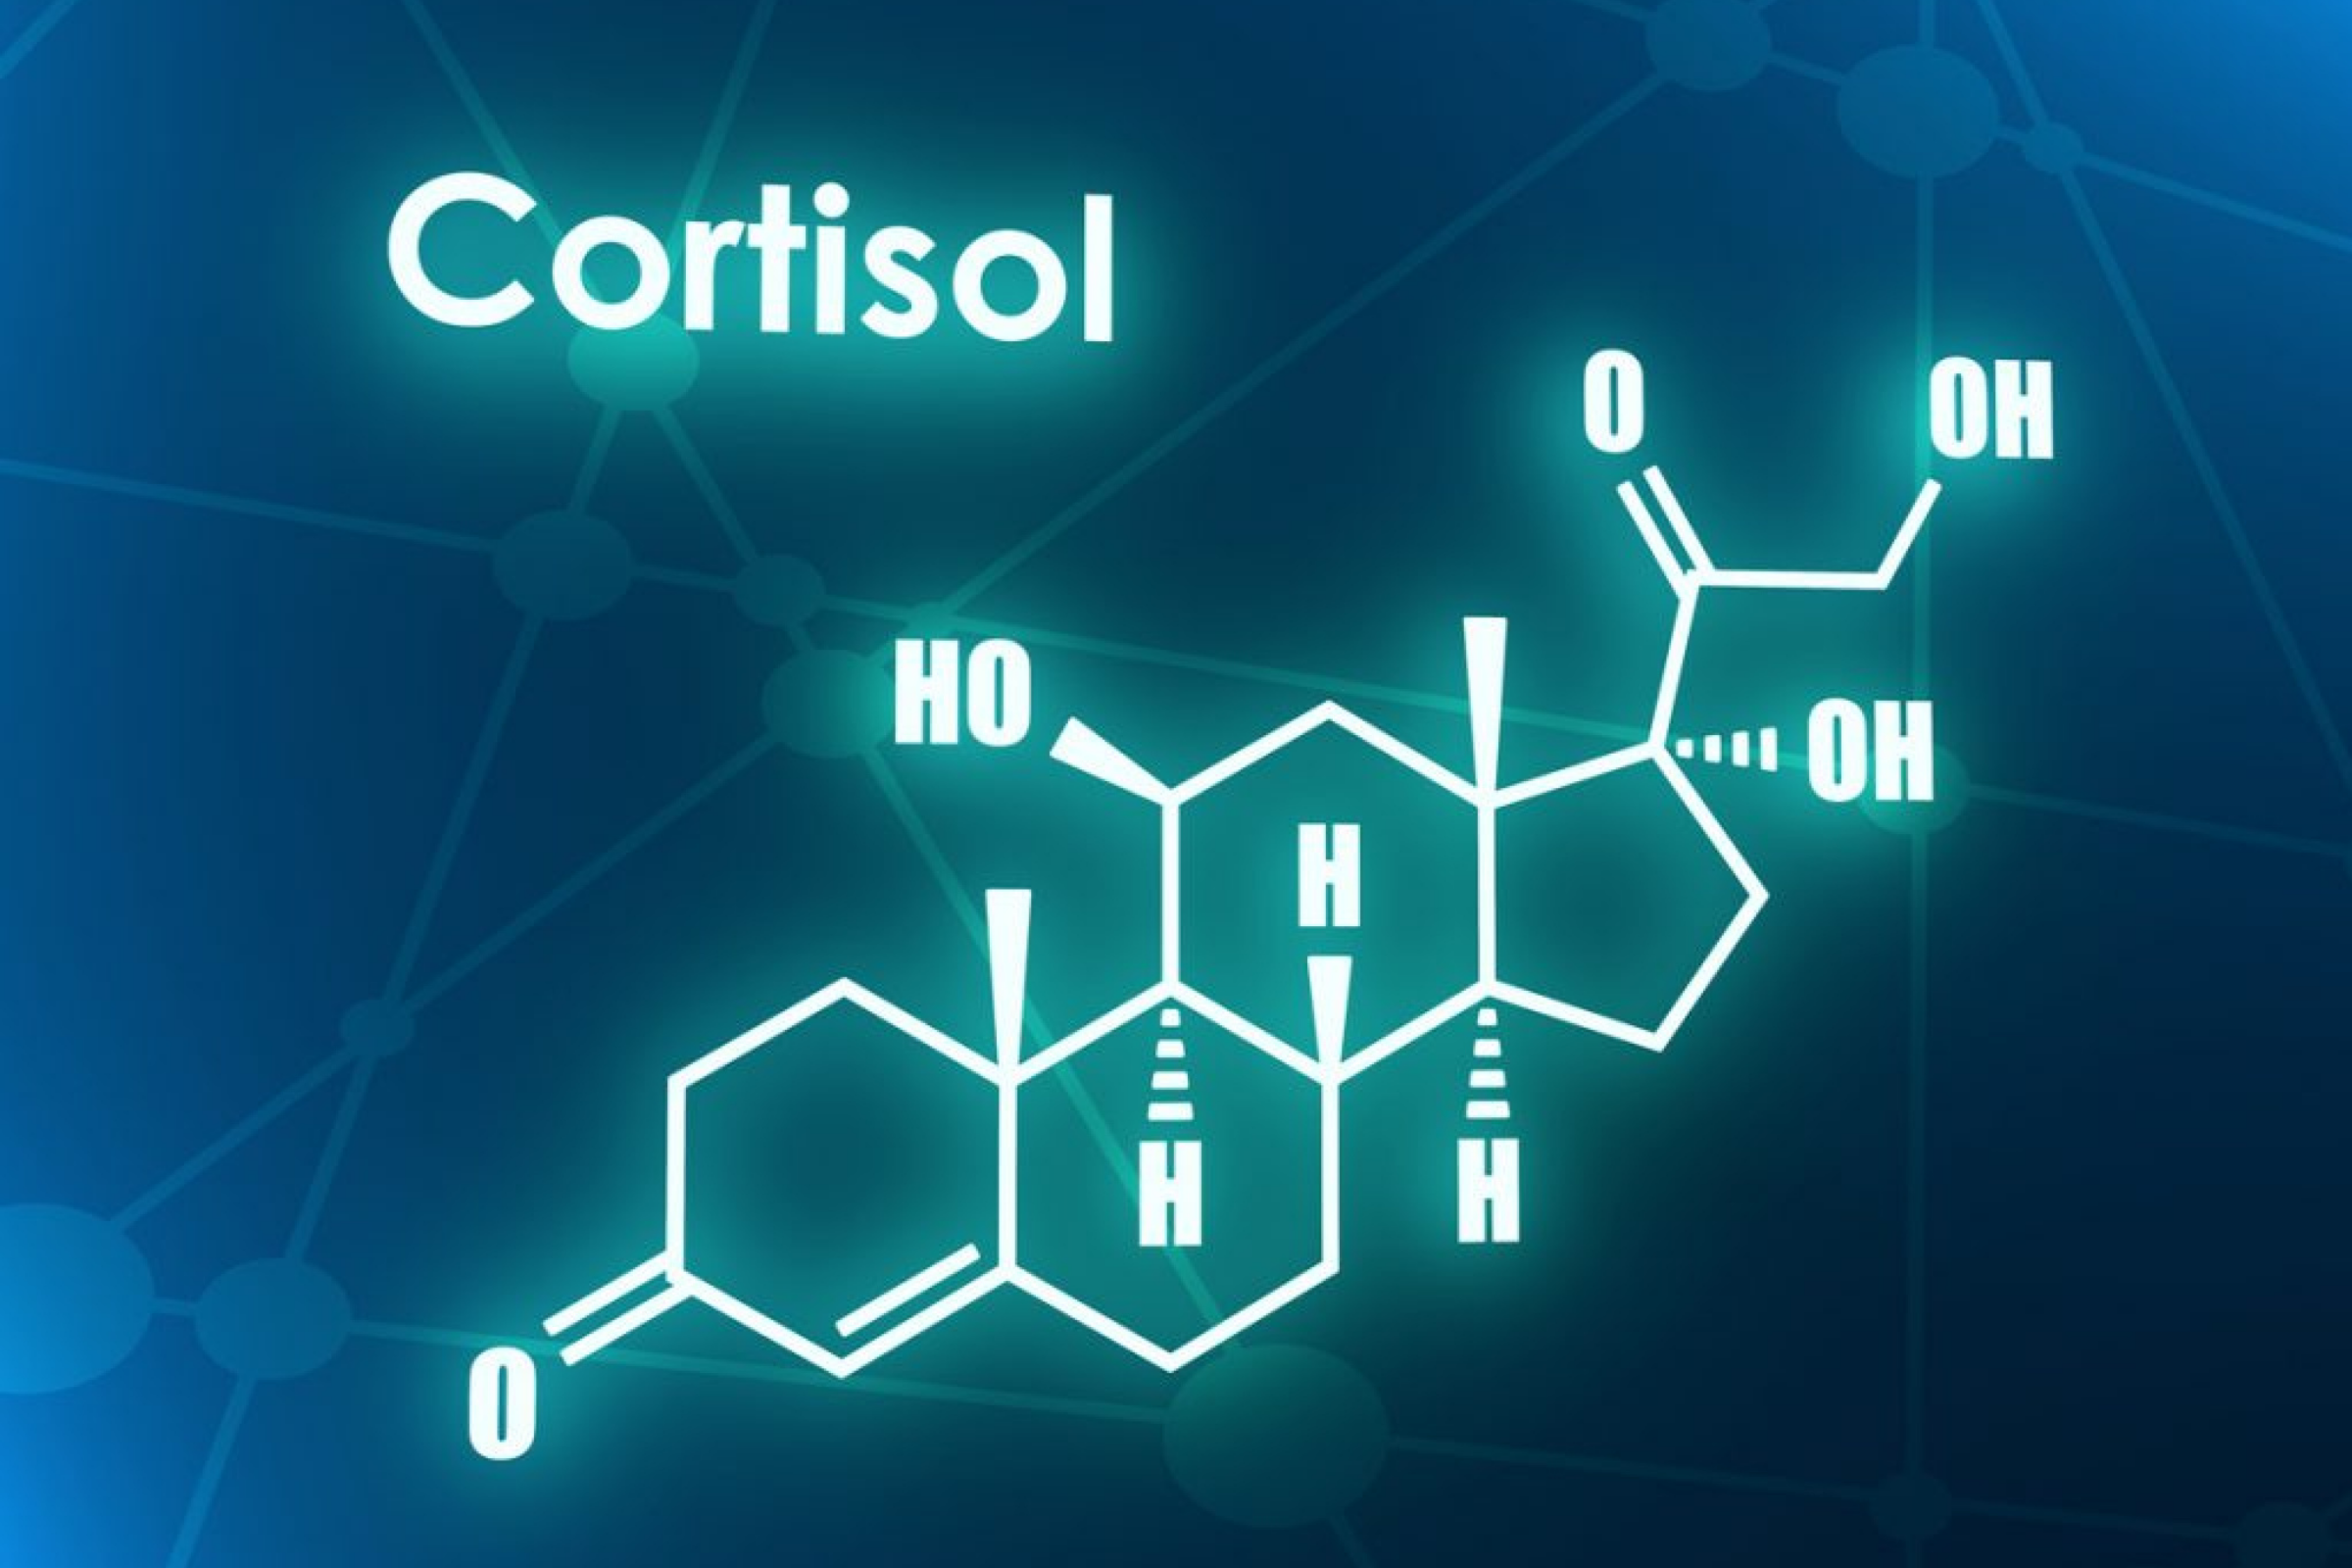 cortisol hormone as a scientific symbol